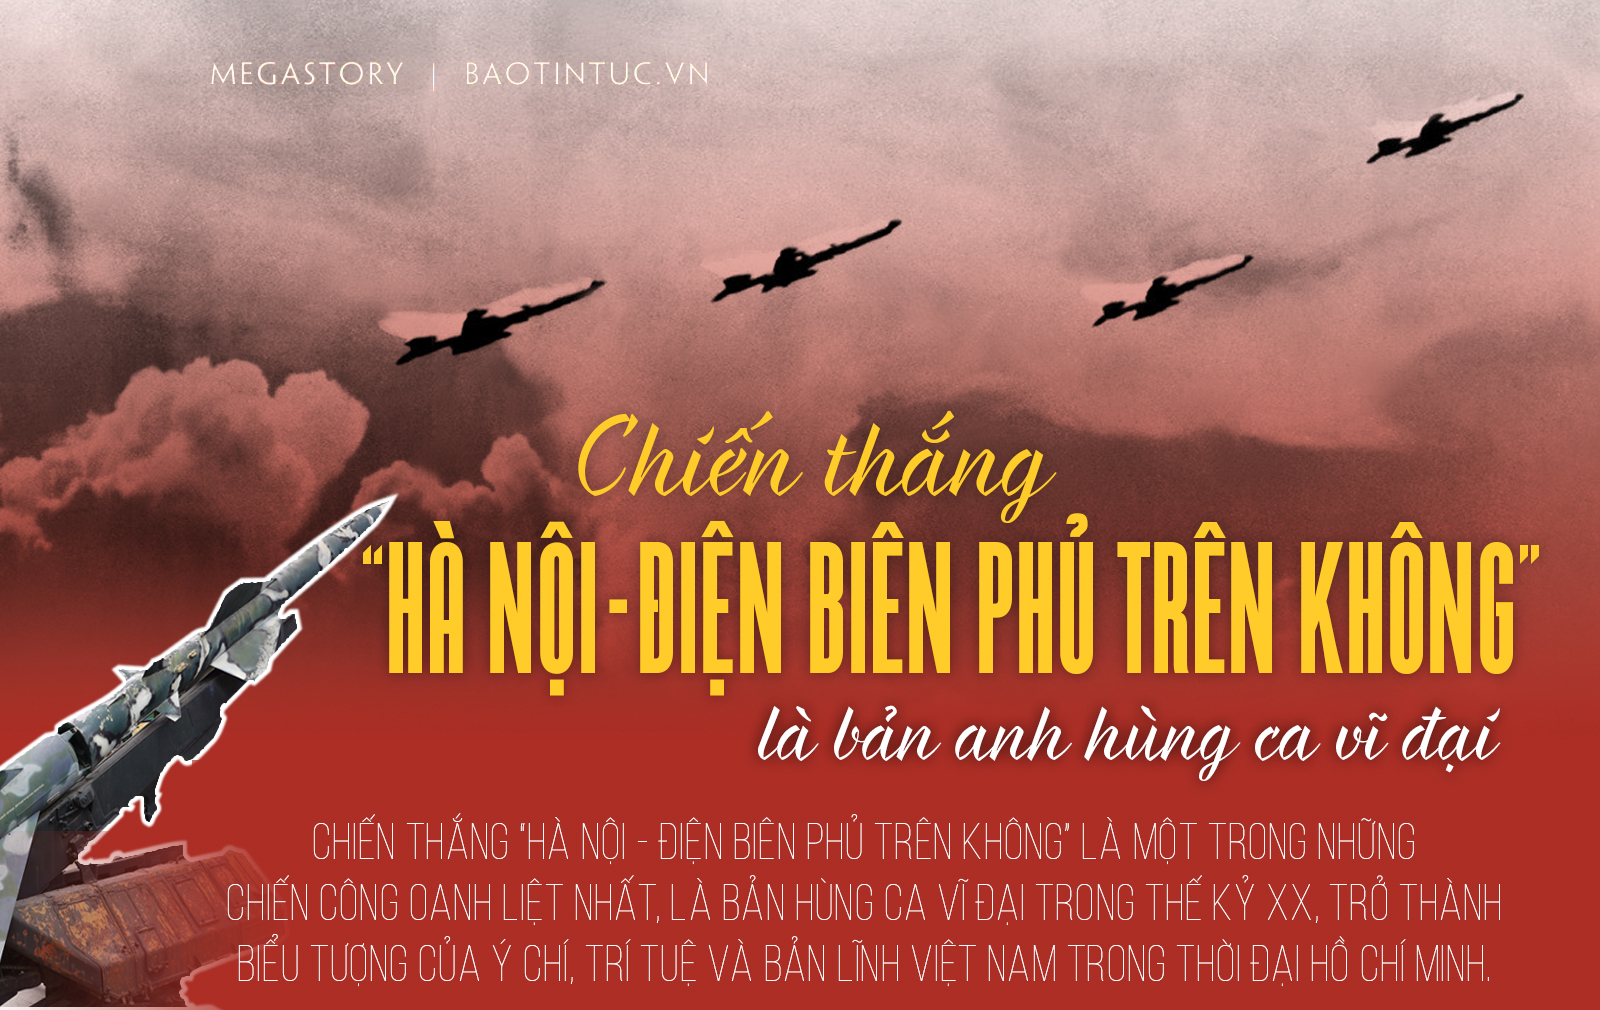 Chiến thắng Hà Nội - Điện Biên Phủ trên không là bản anh hùng ca vĩ đại 